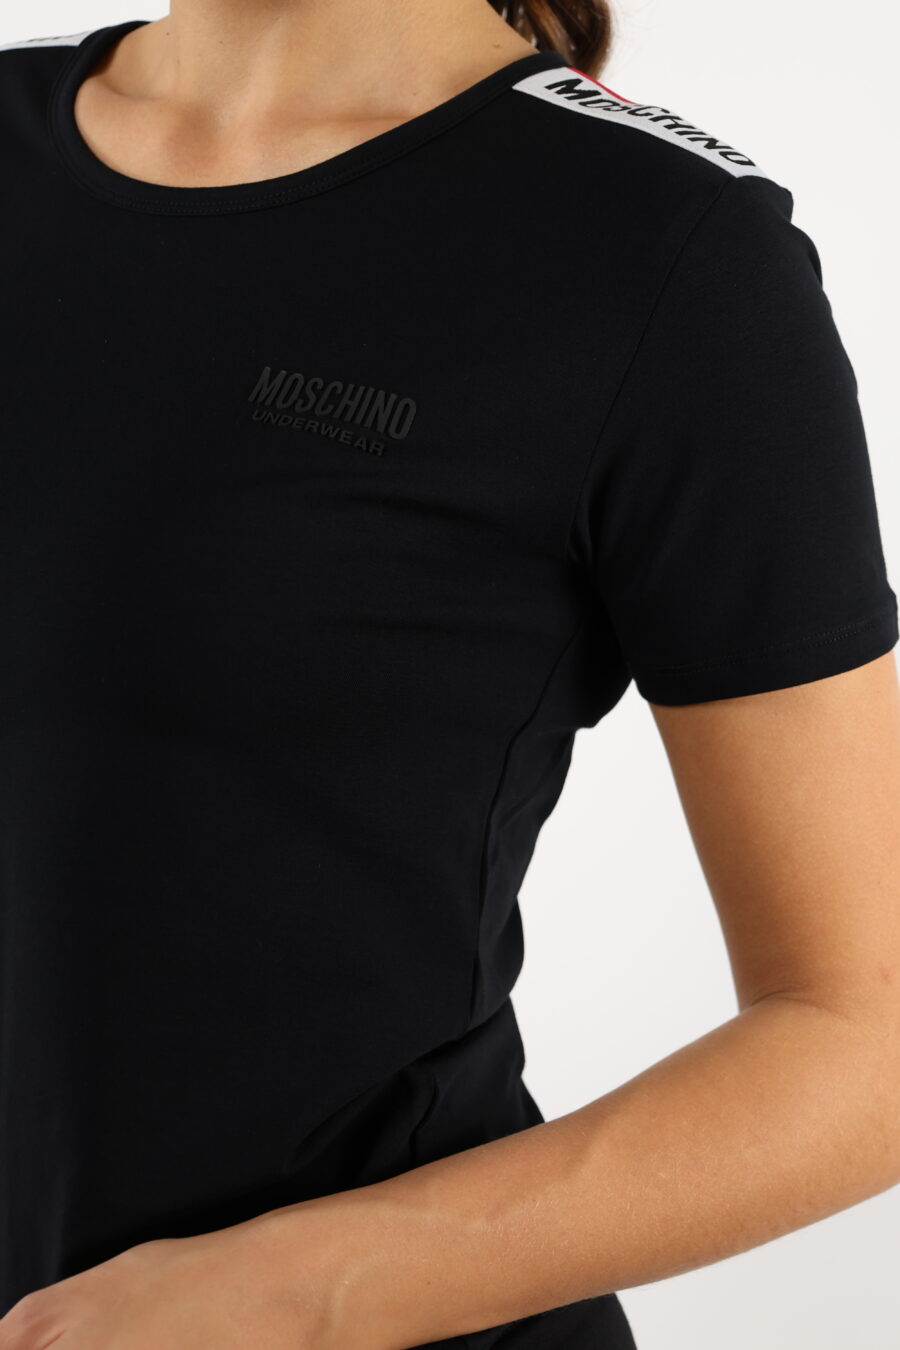 Camiseta negra con logo en cinta hombros monocromático - 110513